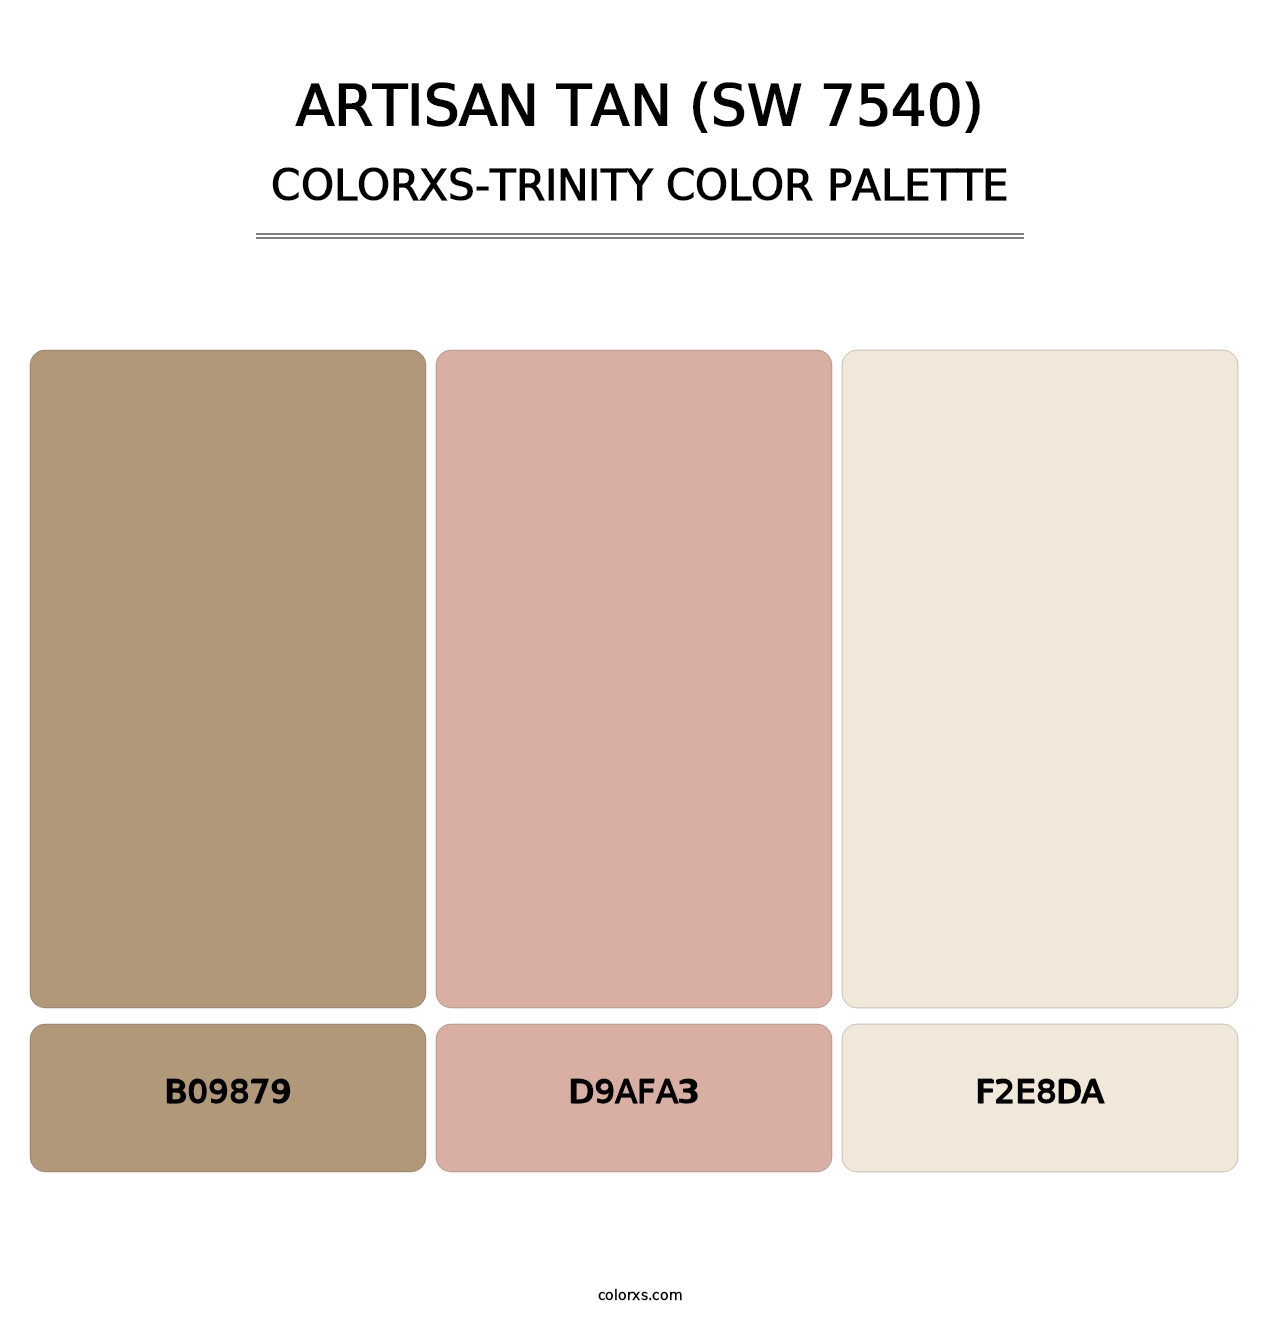 Artisan Tan (SW 7540) - Colorxs Trinity Palette